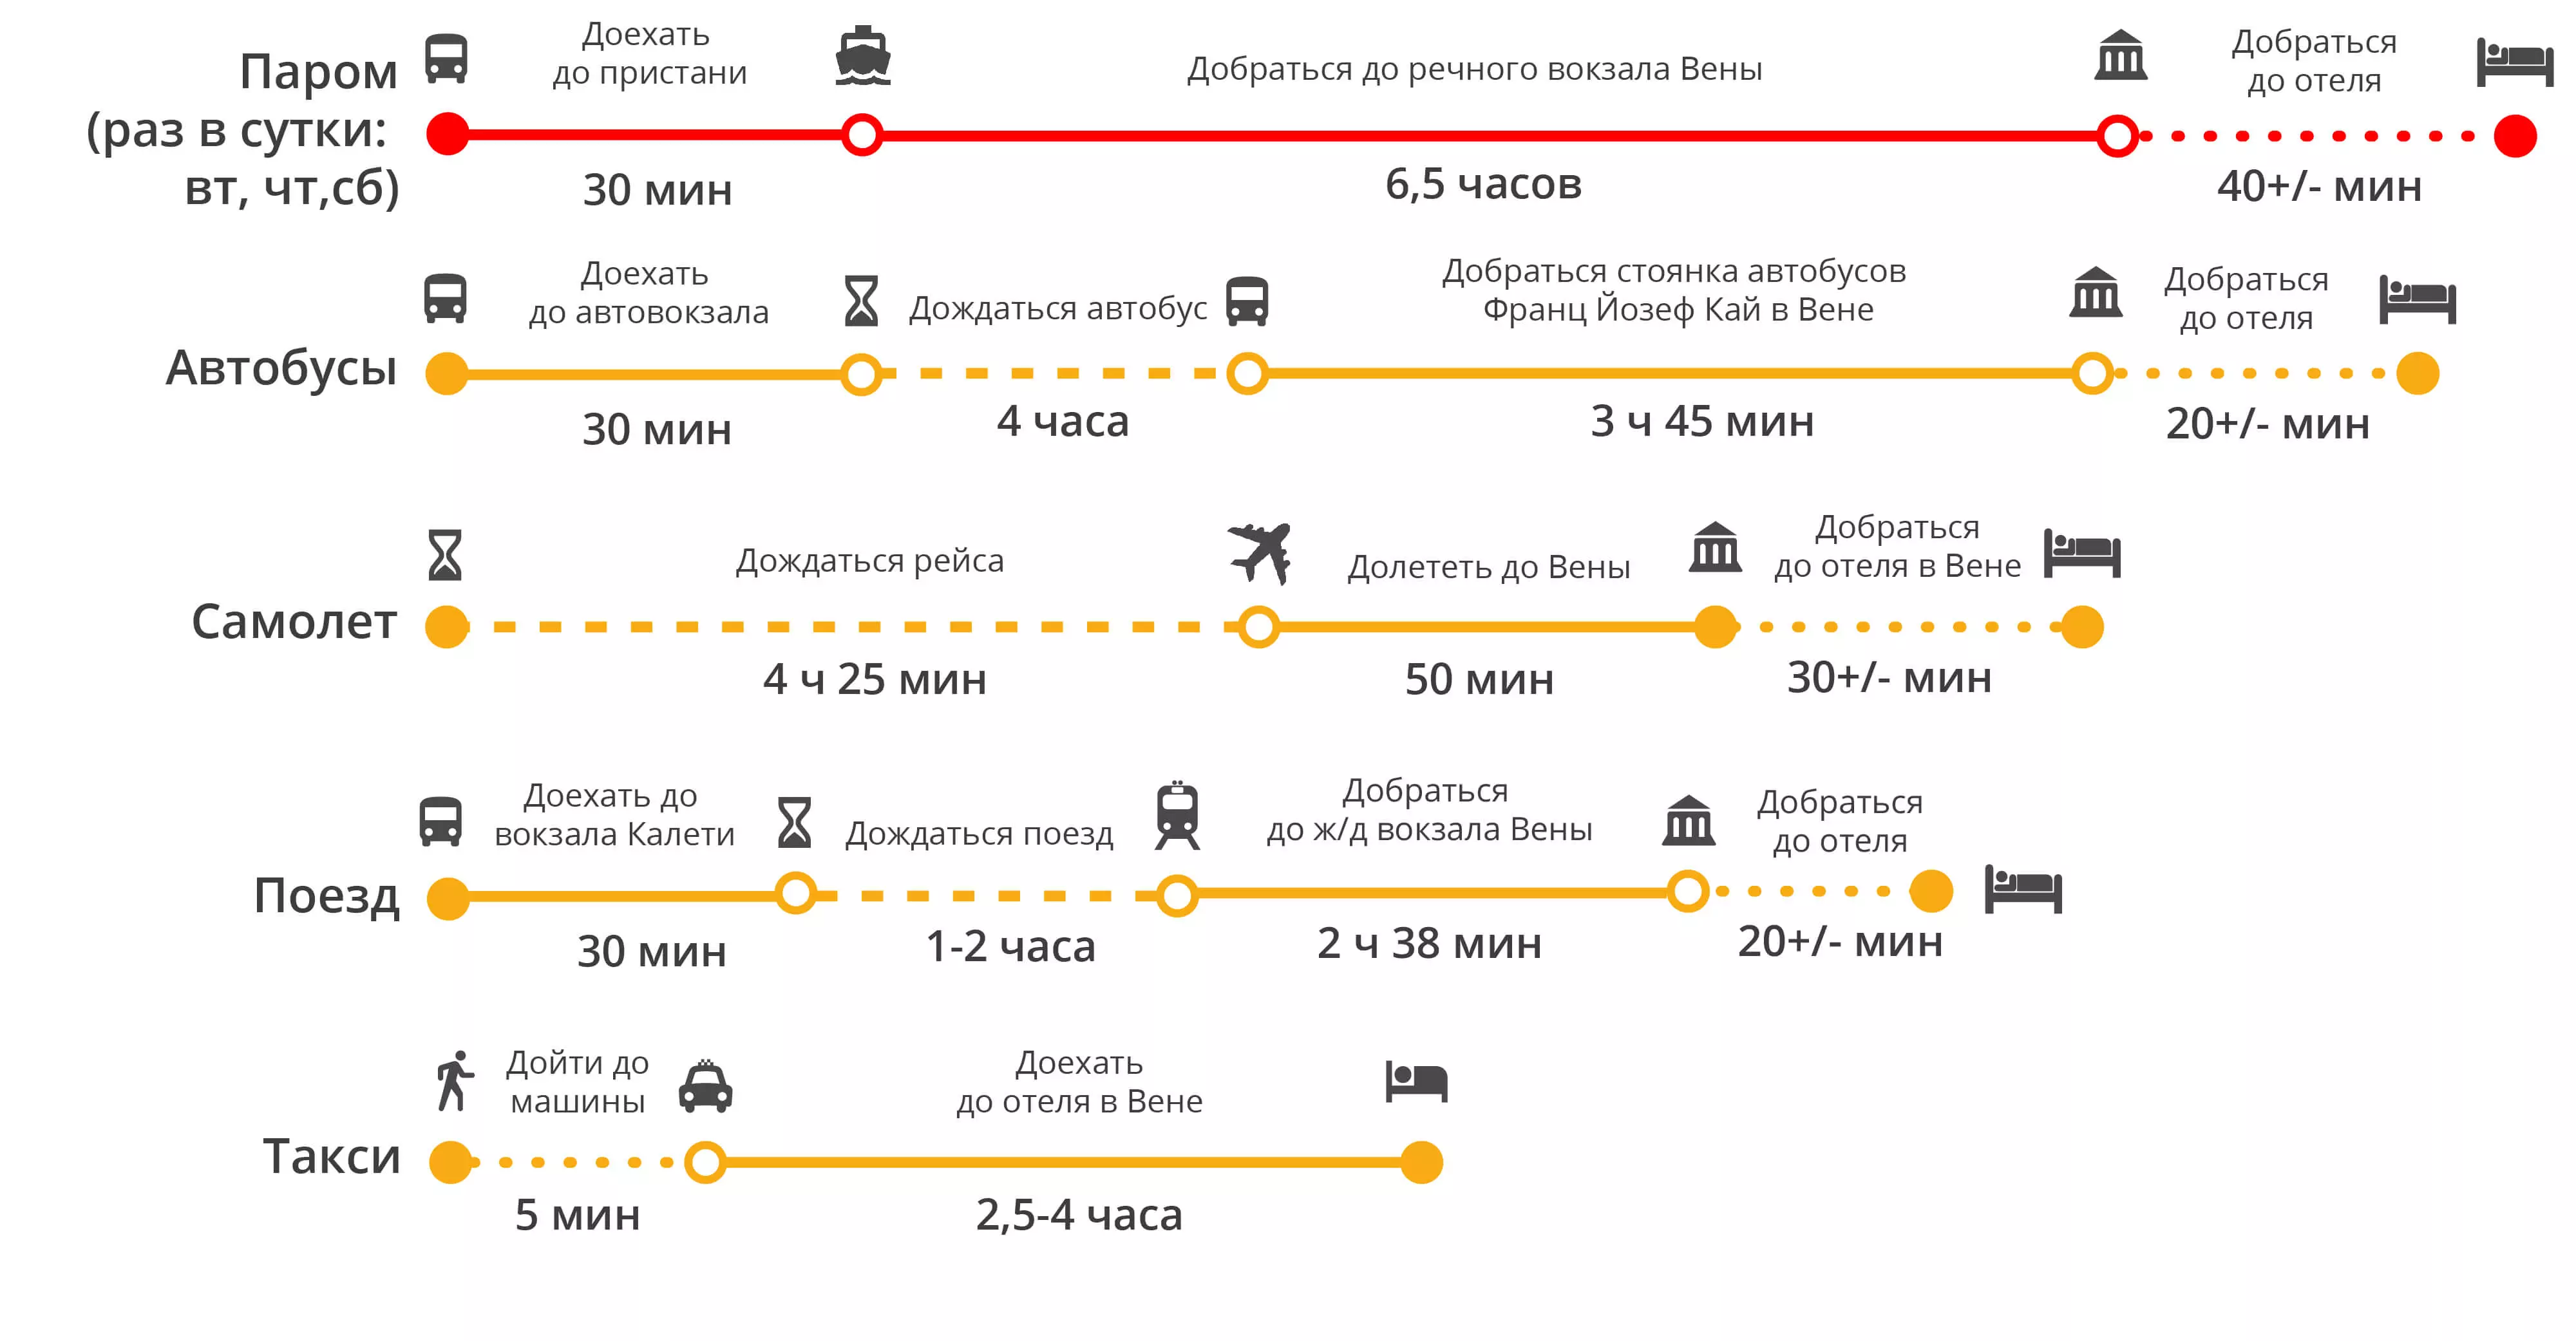 Как добраться из аэропорта будапешта до центра города